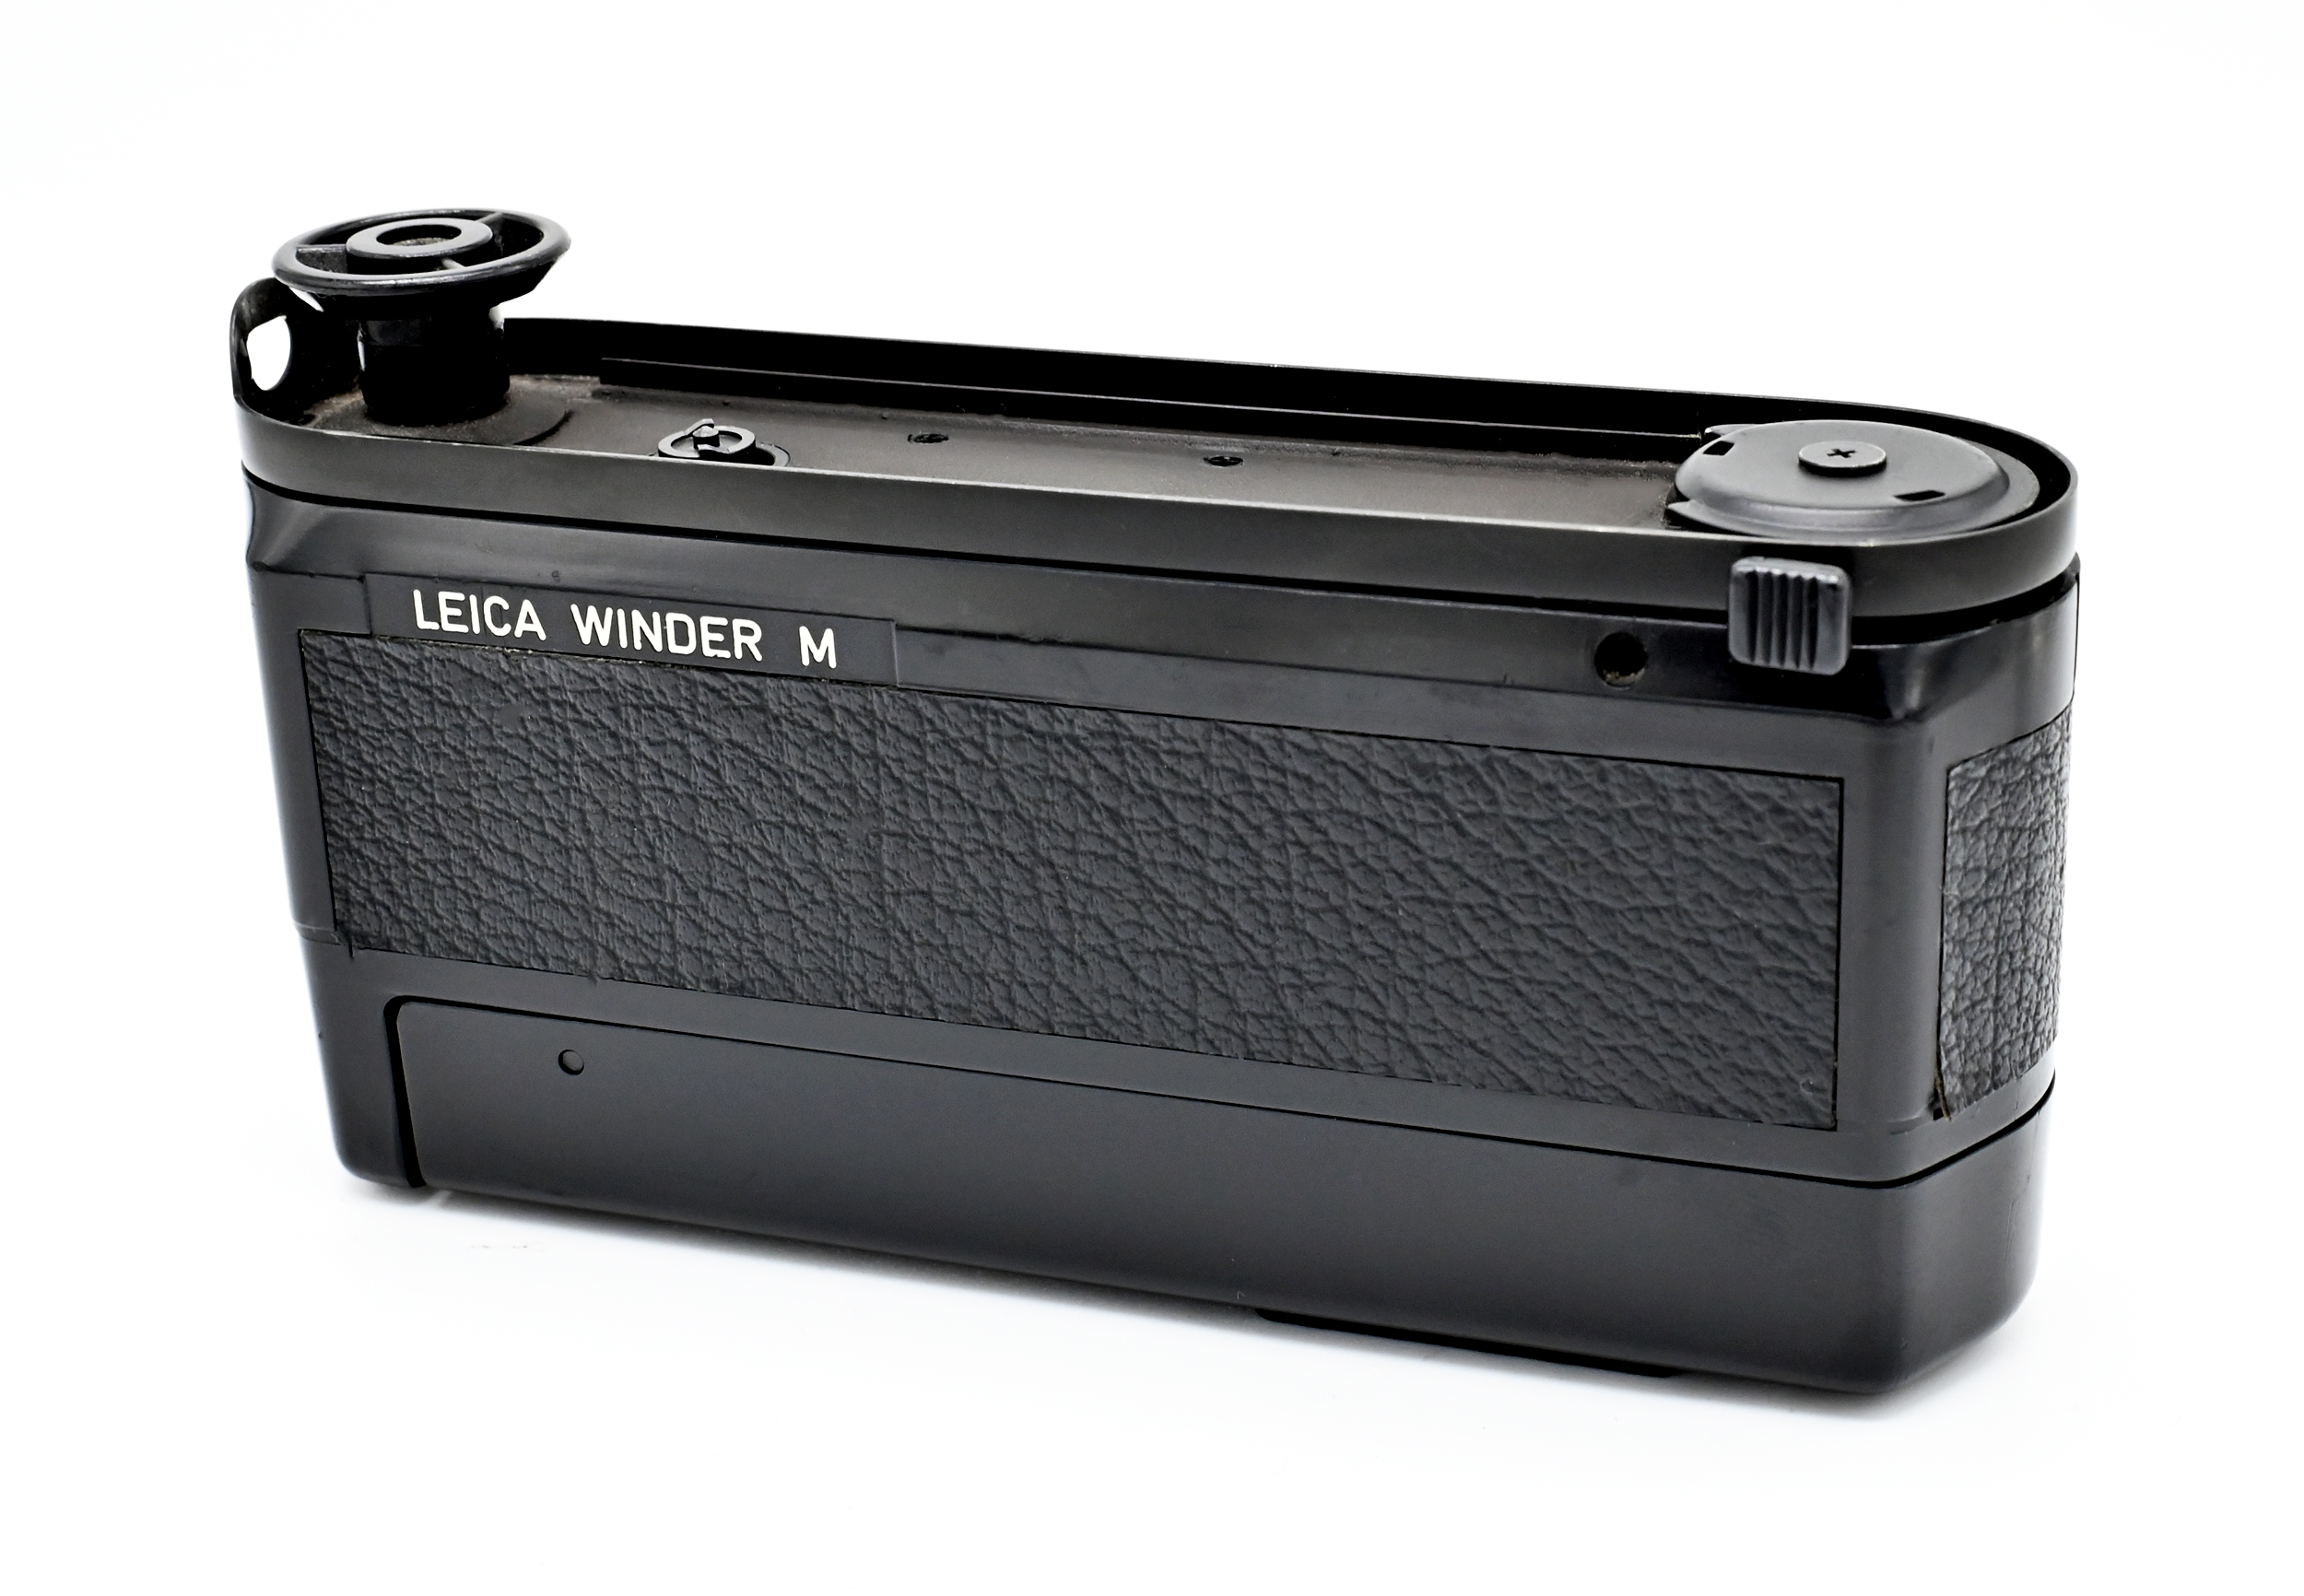 Review: The Leica Winder M (1987) & Motor M (2000) – davidde.com